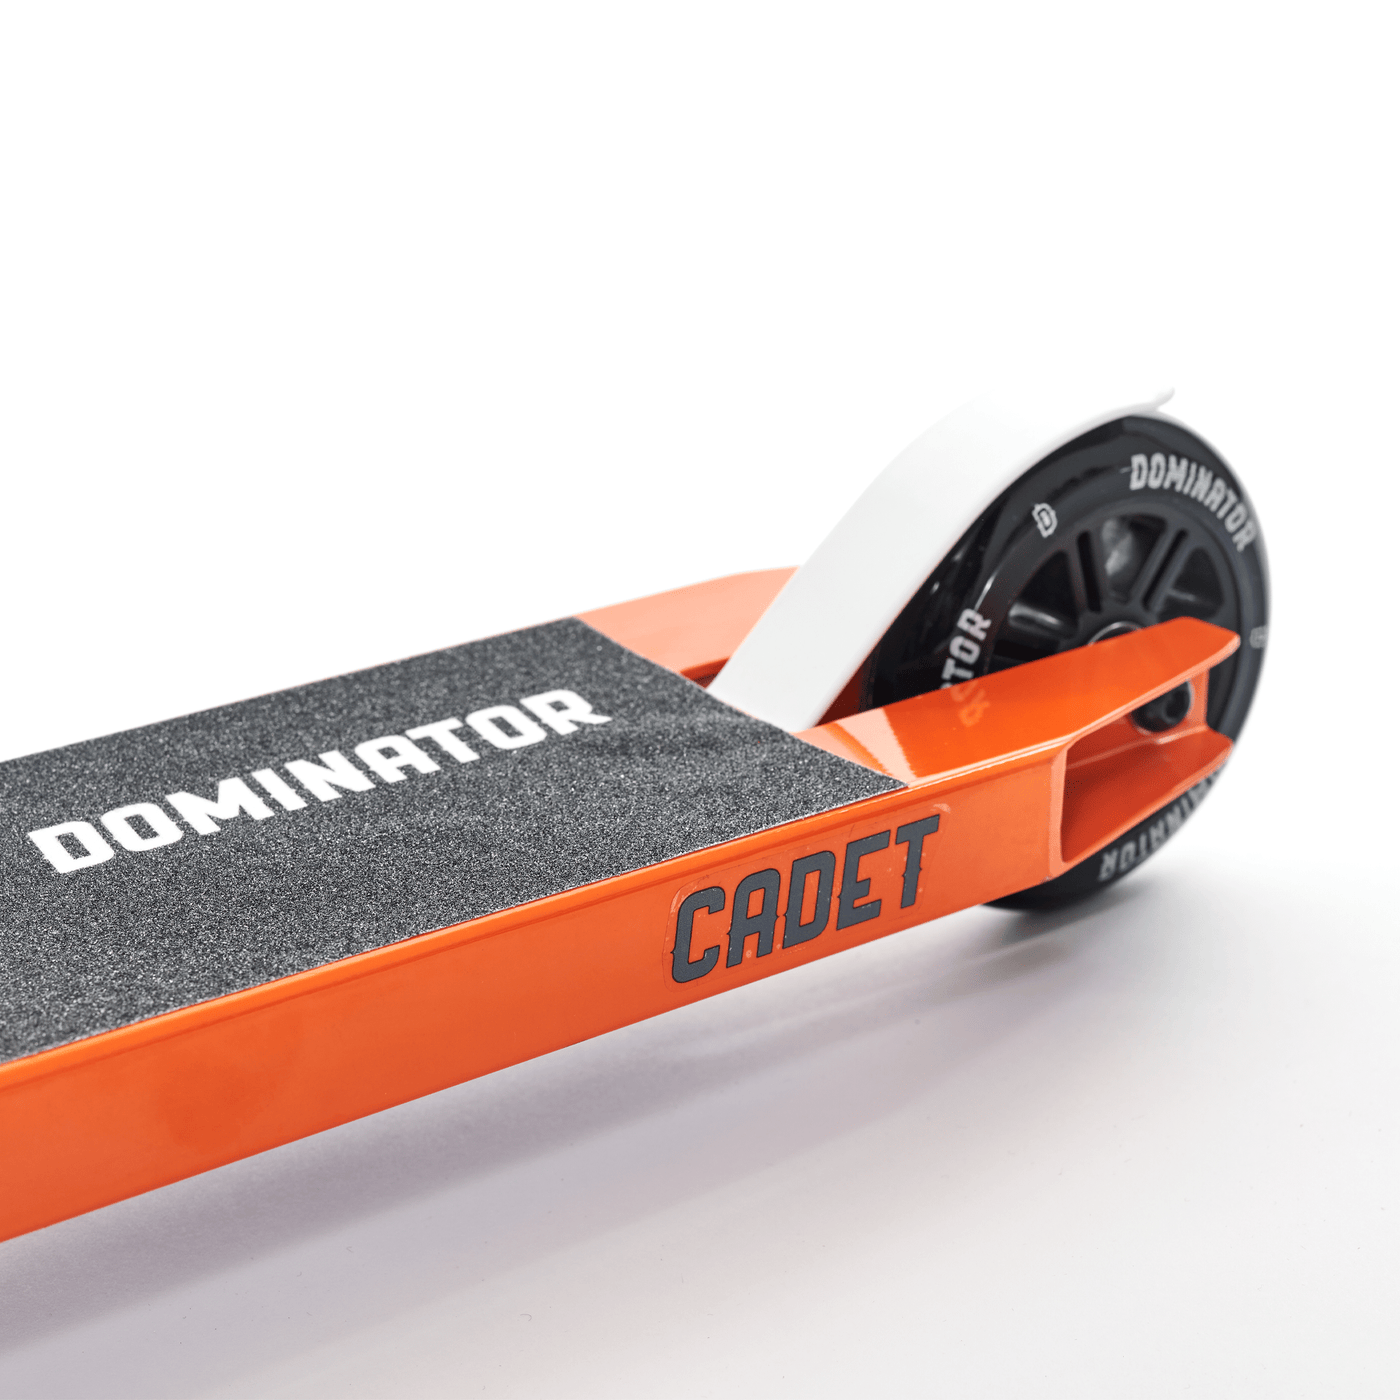 Dominator Cadet Complete Scooter - Orange / Black Dominator